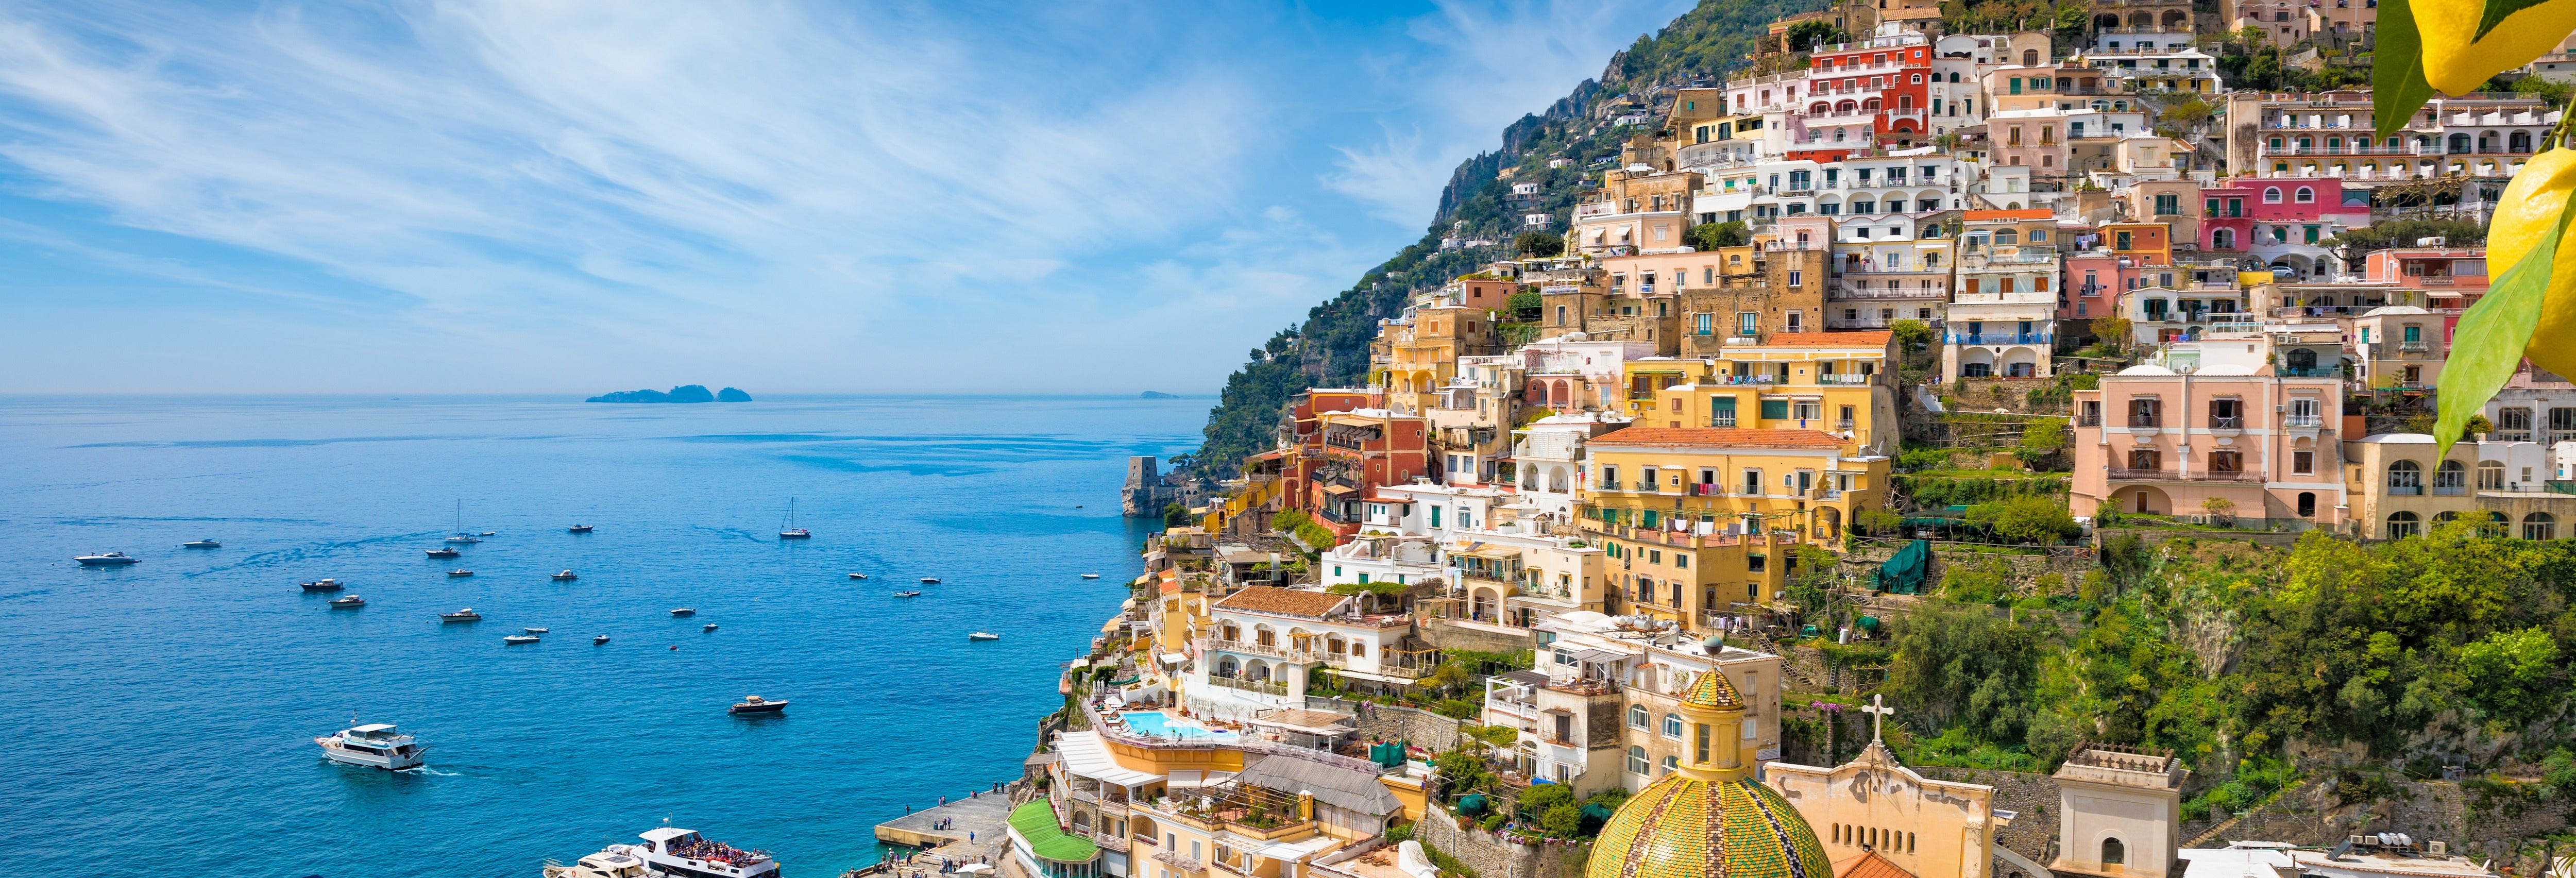 Excursão a Sorrento e à Costa Amalfitana